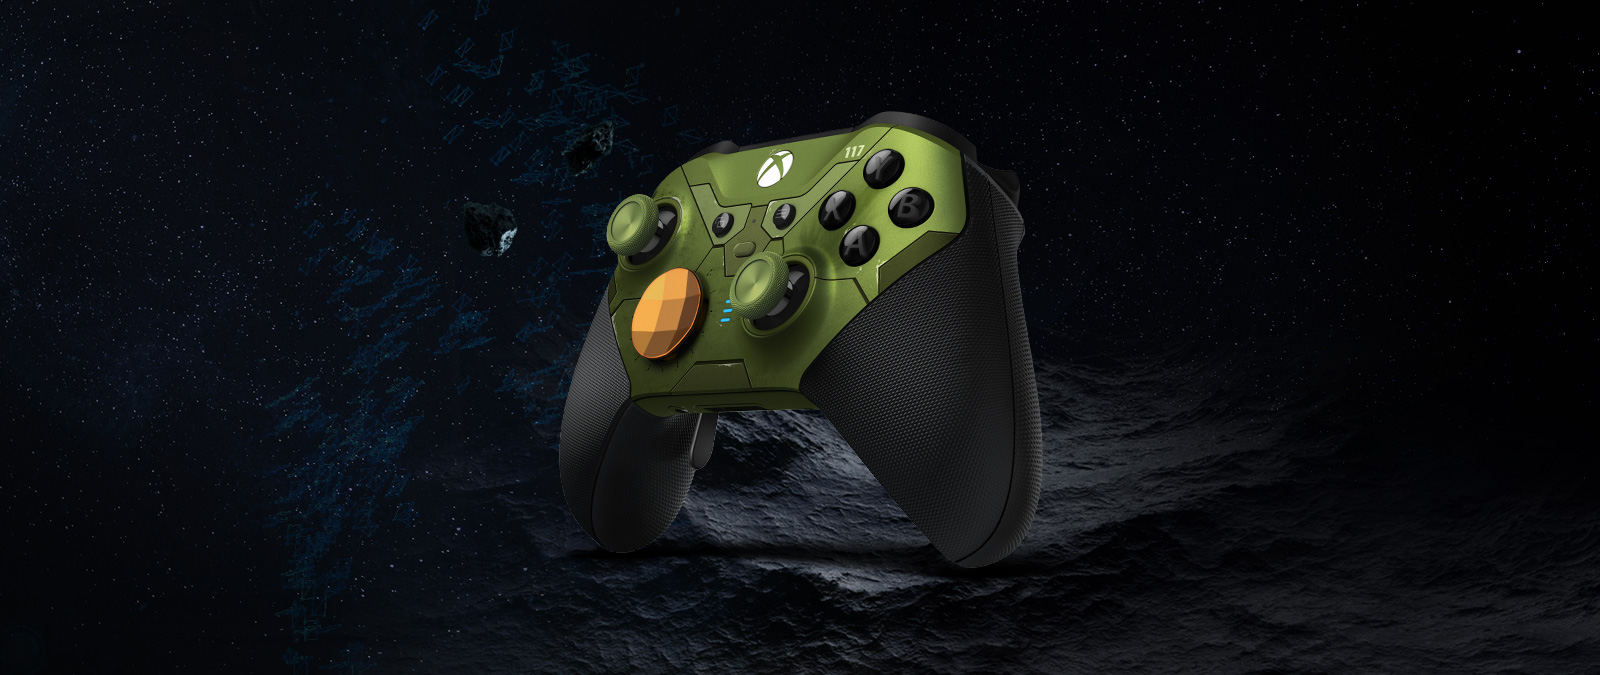 Vista angolare destra del Controller Wireless Elite per Xbox Series 2 - Halo Infinite Limited Edition sospeso nello spazio